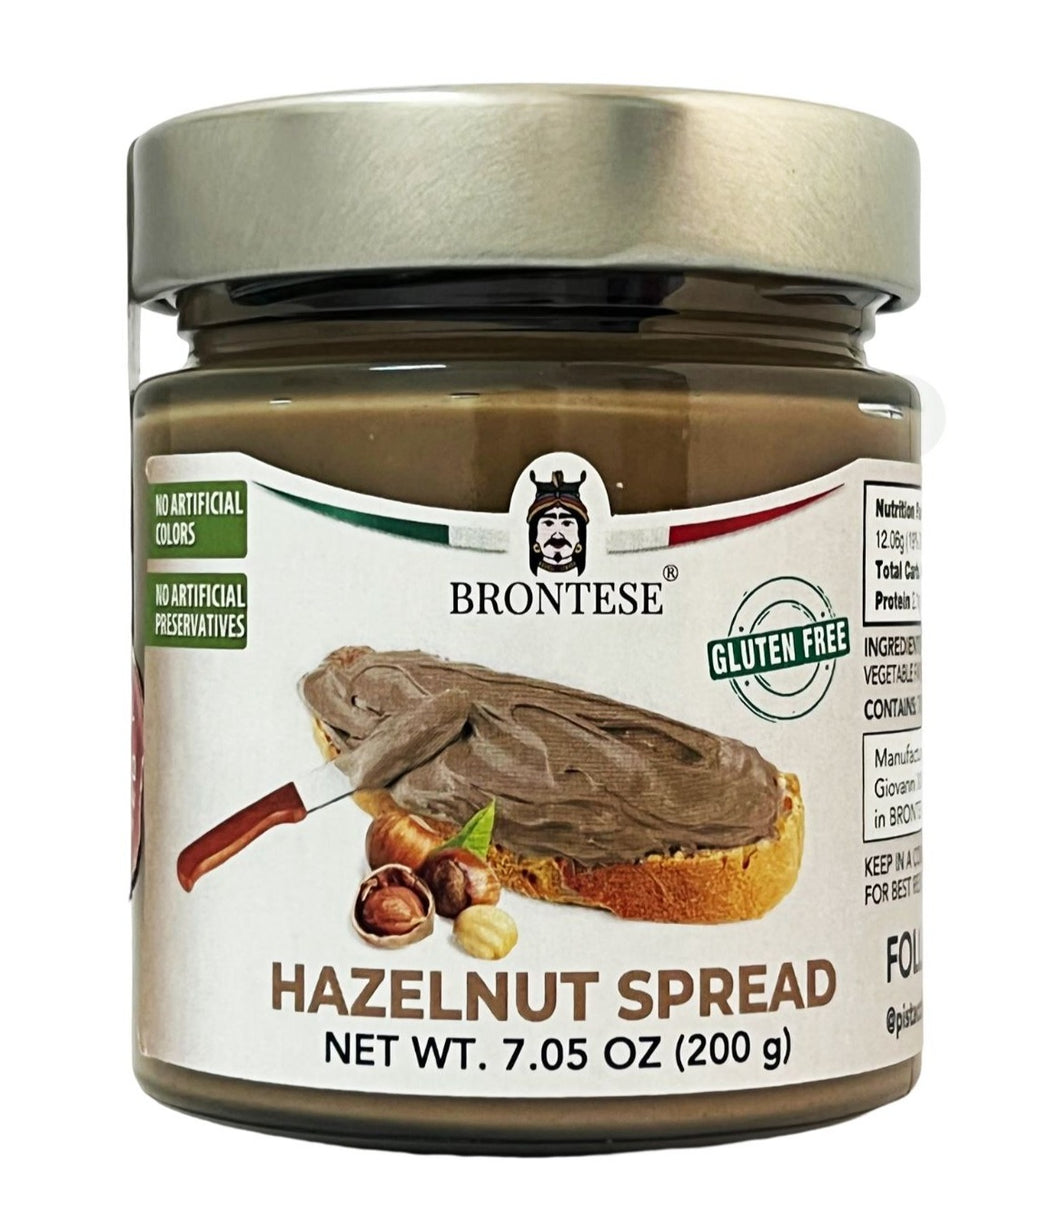 Halzenut Cream Spread, by Brontese 7.05 oz